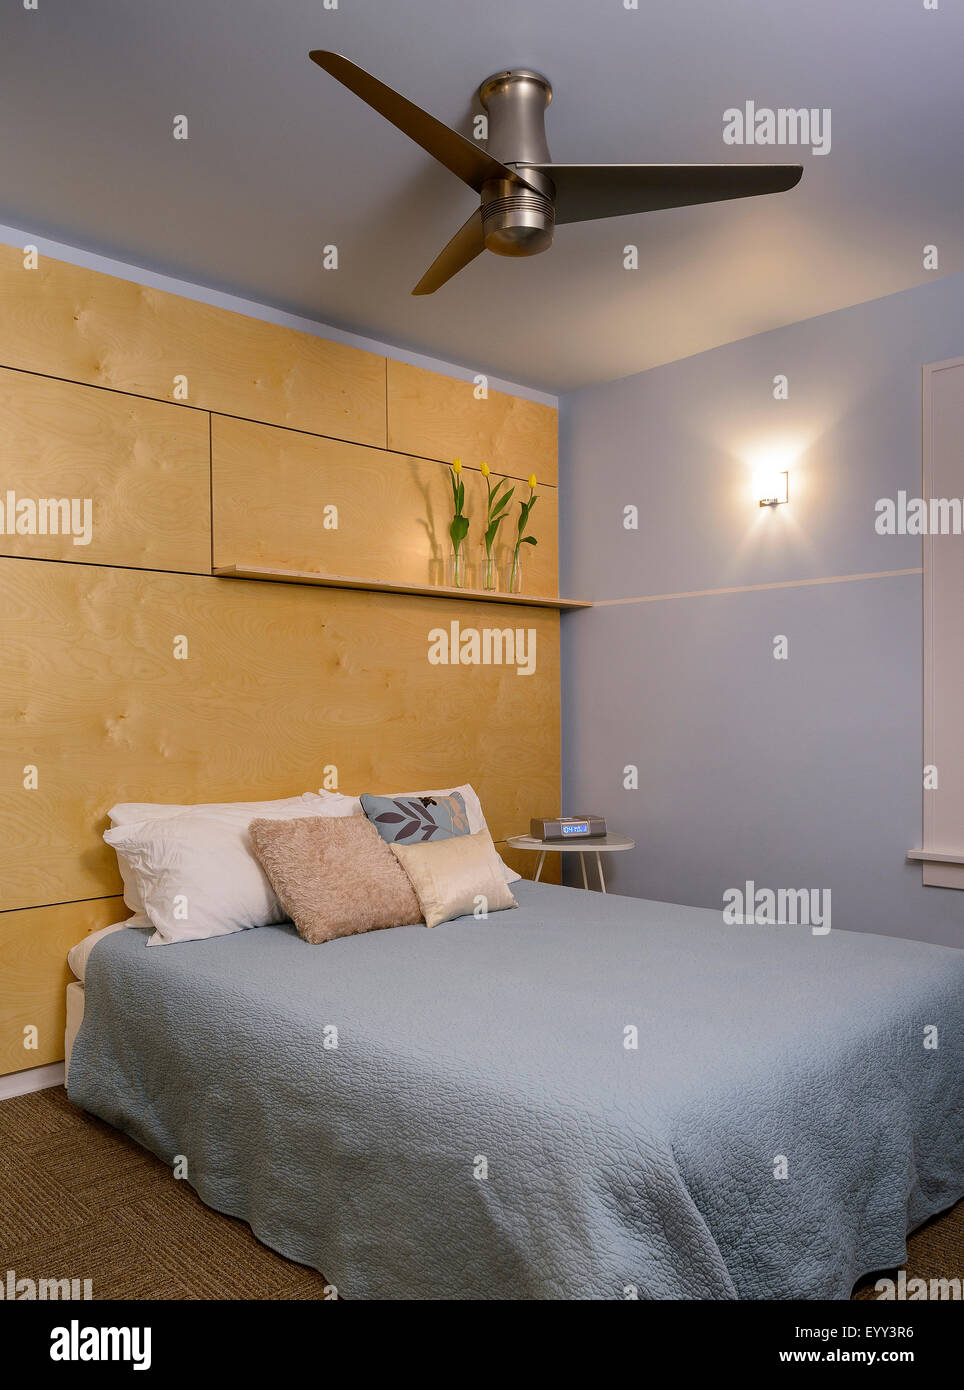 Ventilateur de plafond et lit dans chambre à coucher moderne Photo Stock -  Alamy